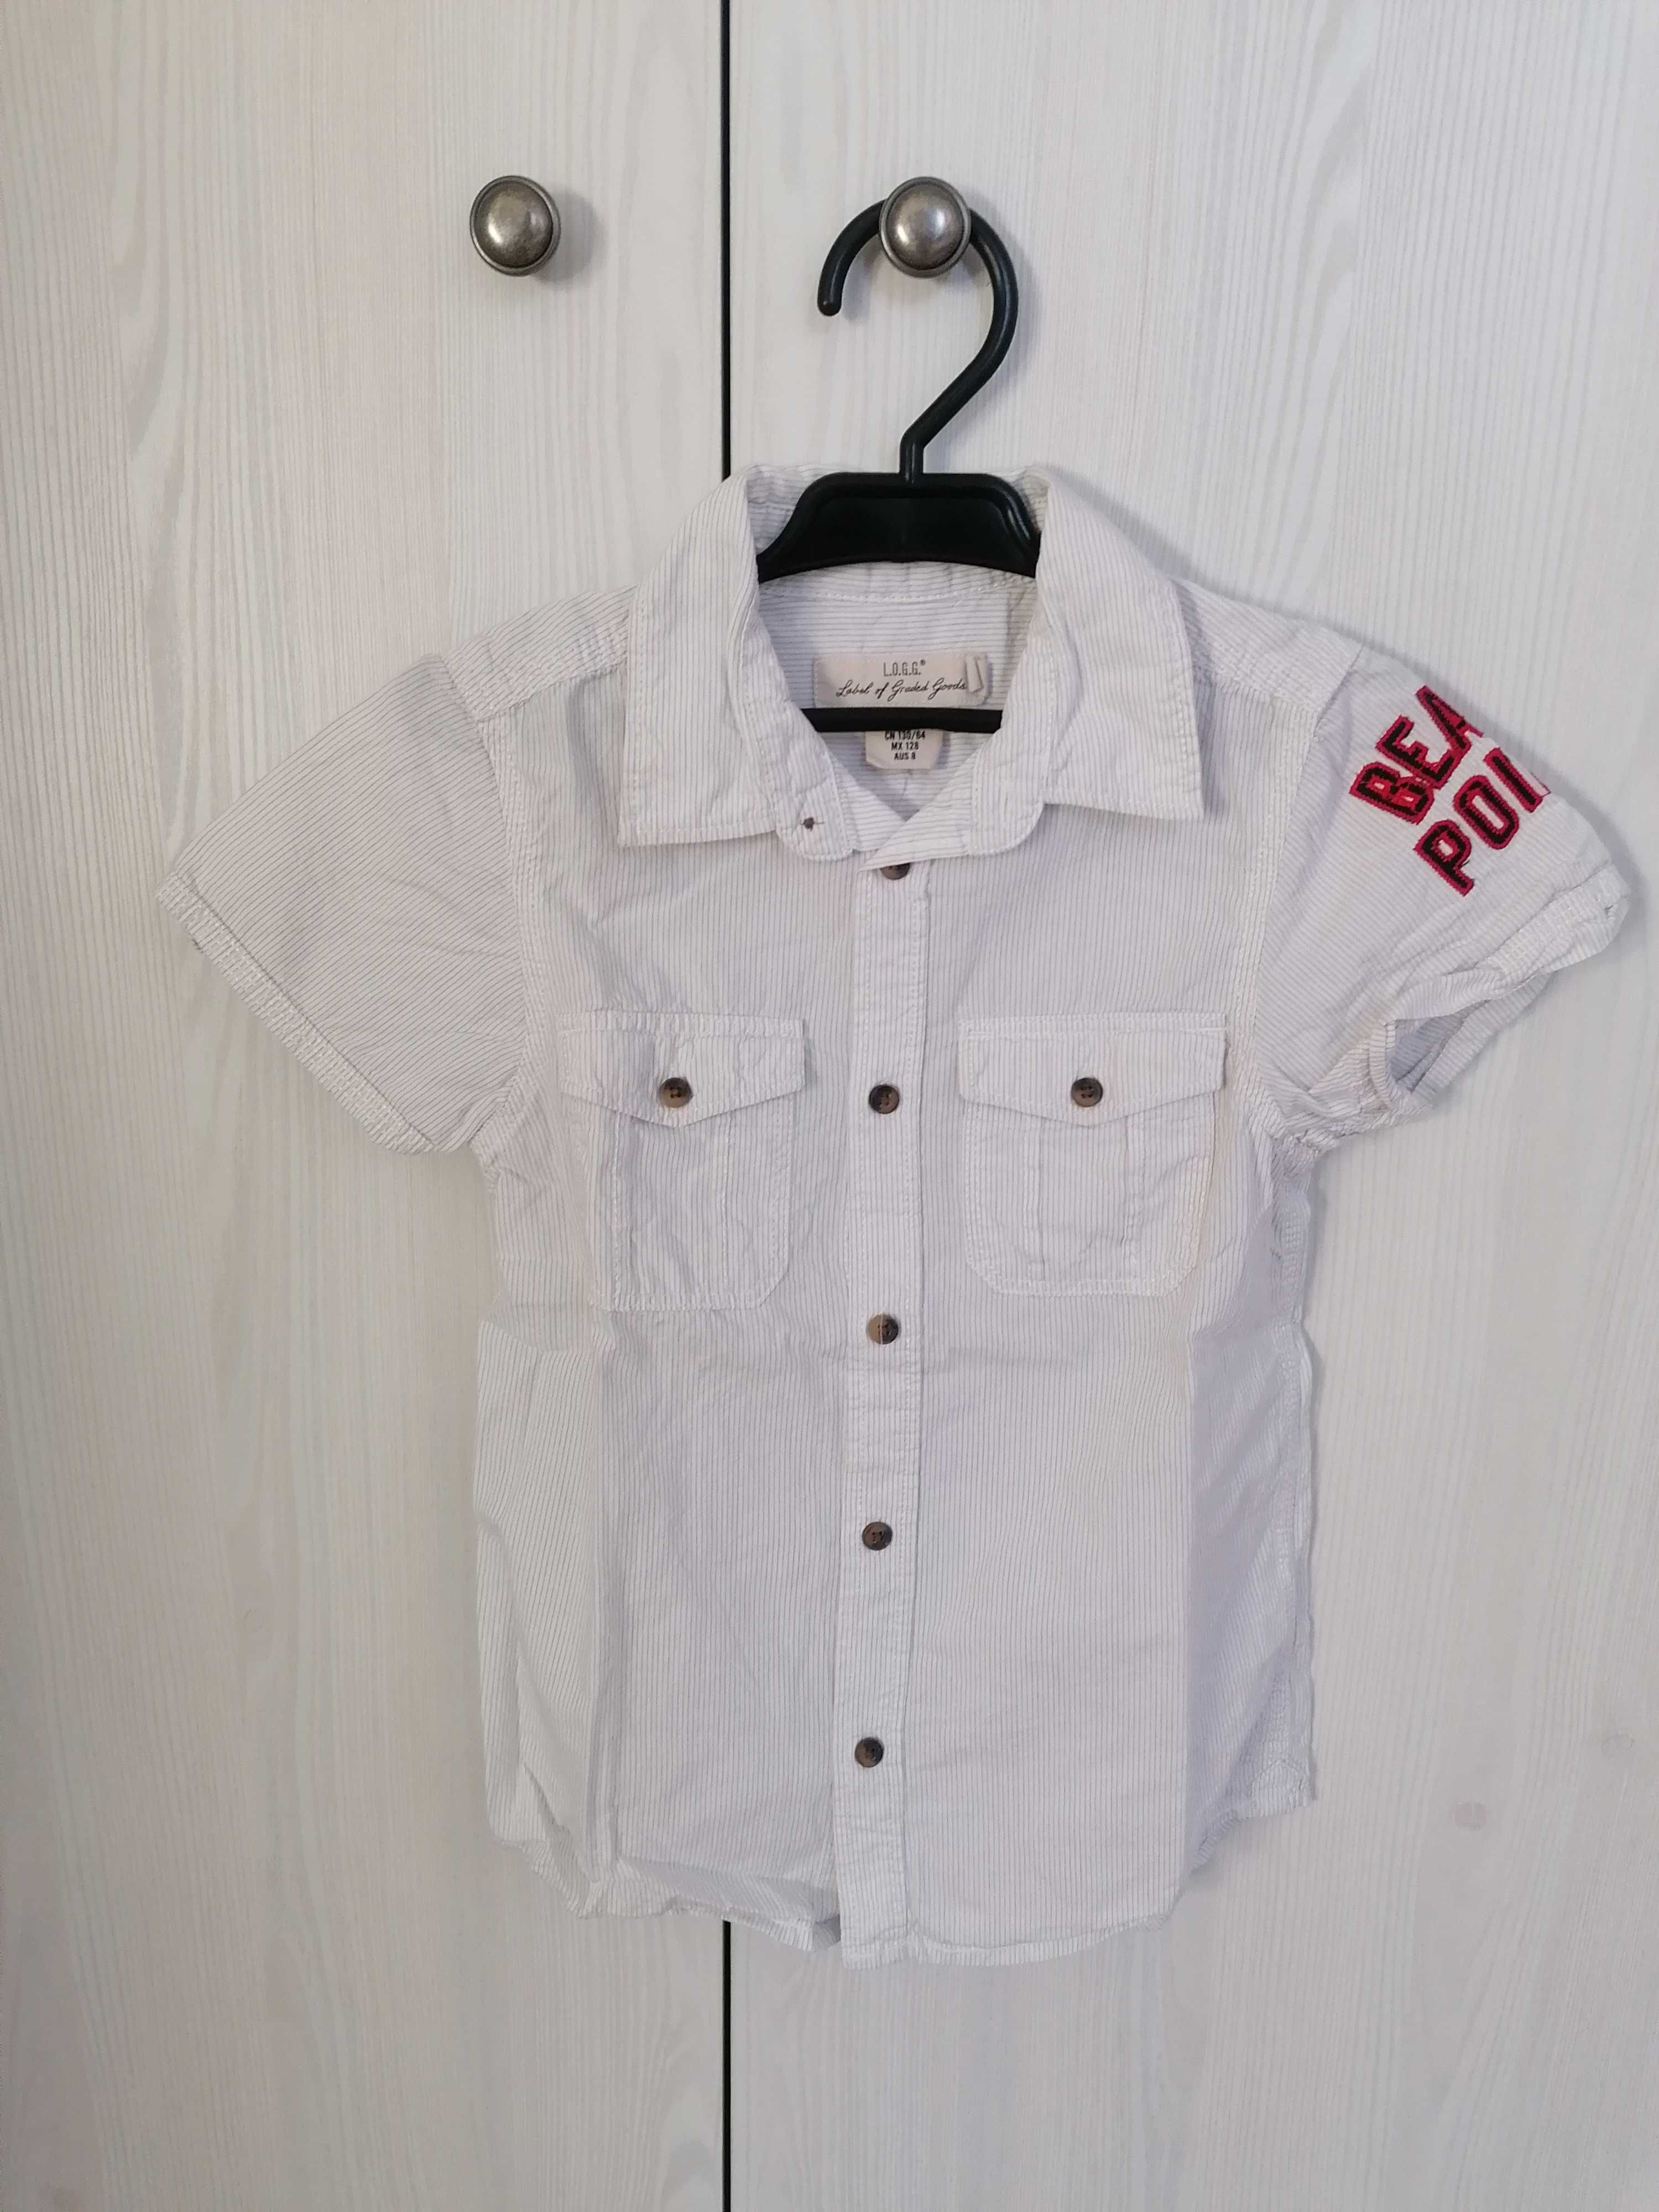 Koszula chłopięca z krótkim rękawem H&M rozmiar 122-128